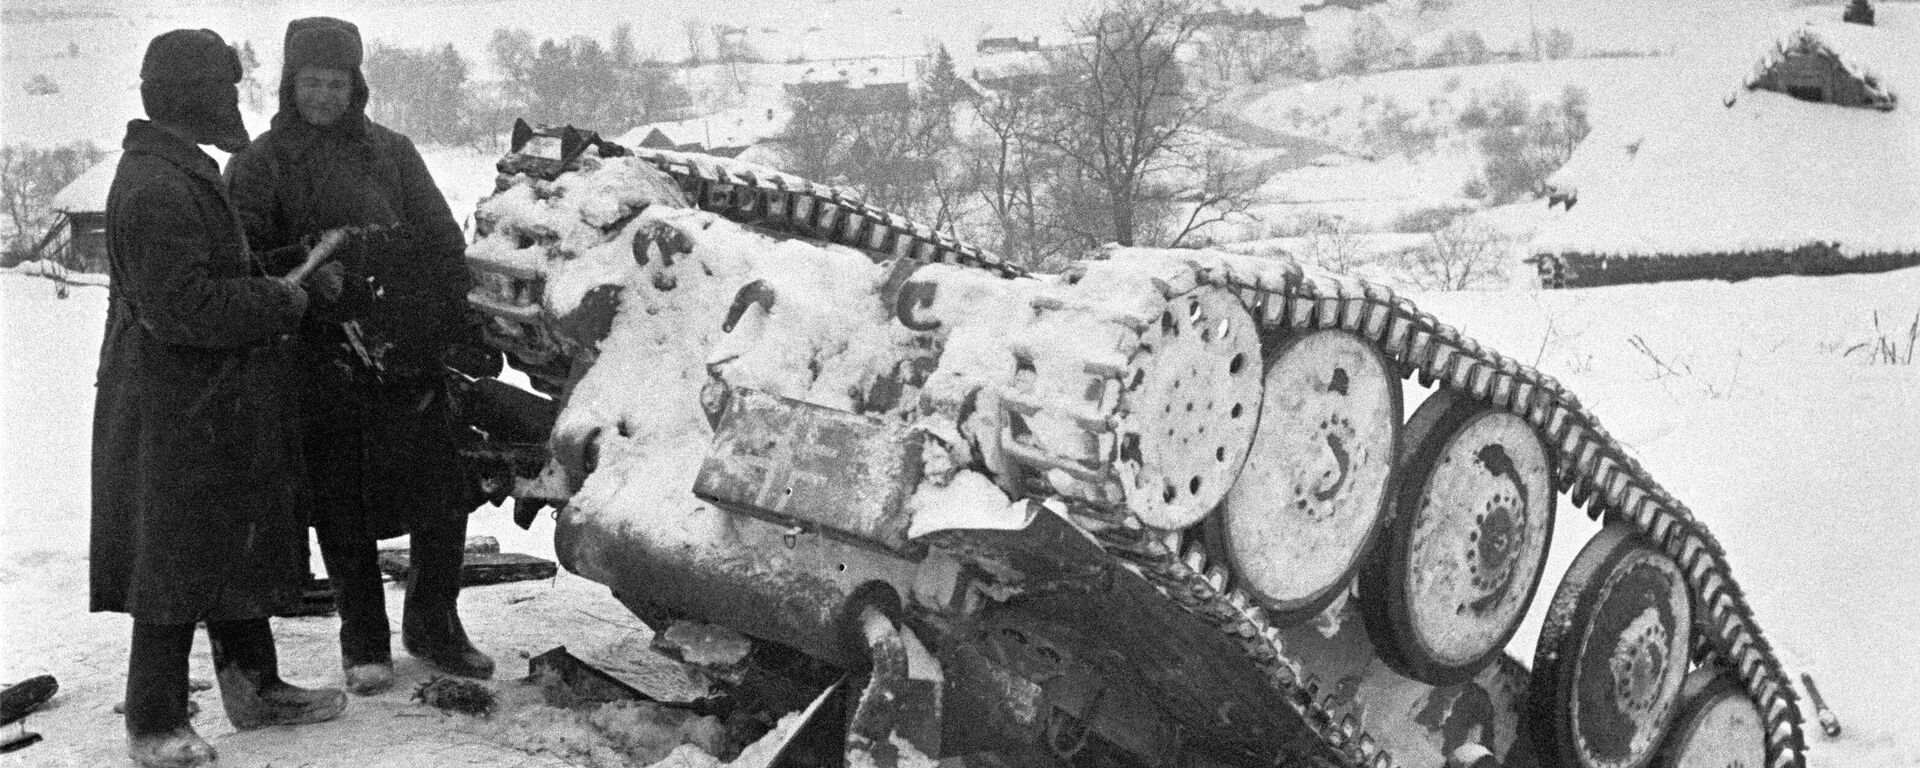 Разгром немецких войск под Москвой. Красноармейцы стоят рядом с подбитым немецким танком. - Sputnik Абхазия, 1920, 05.12.2021